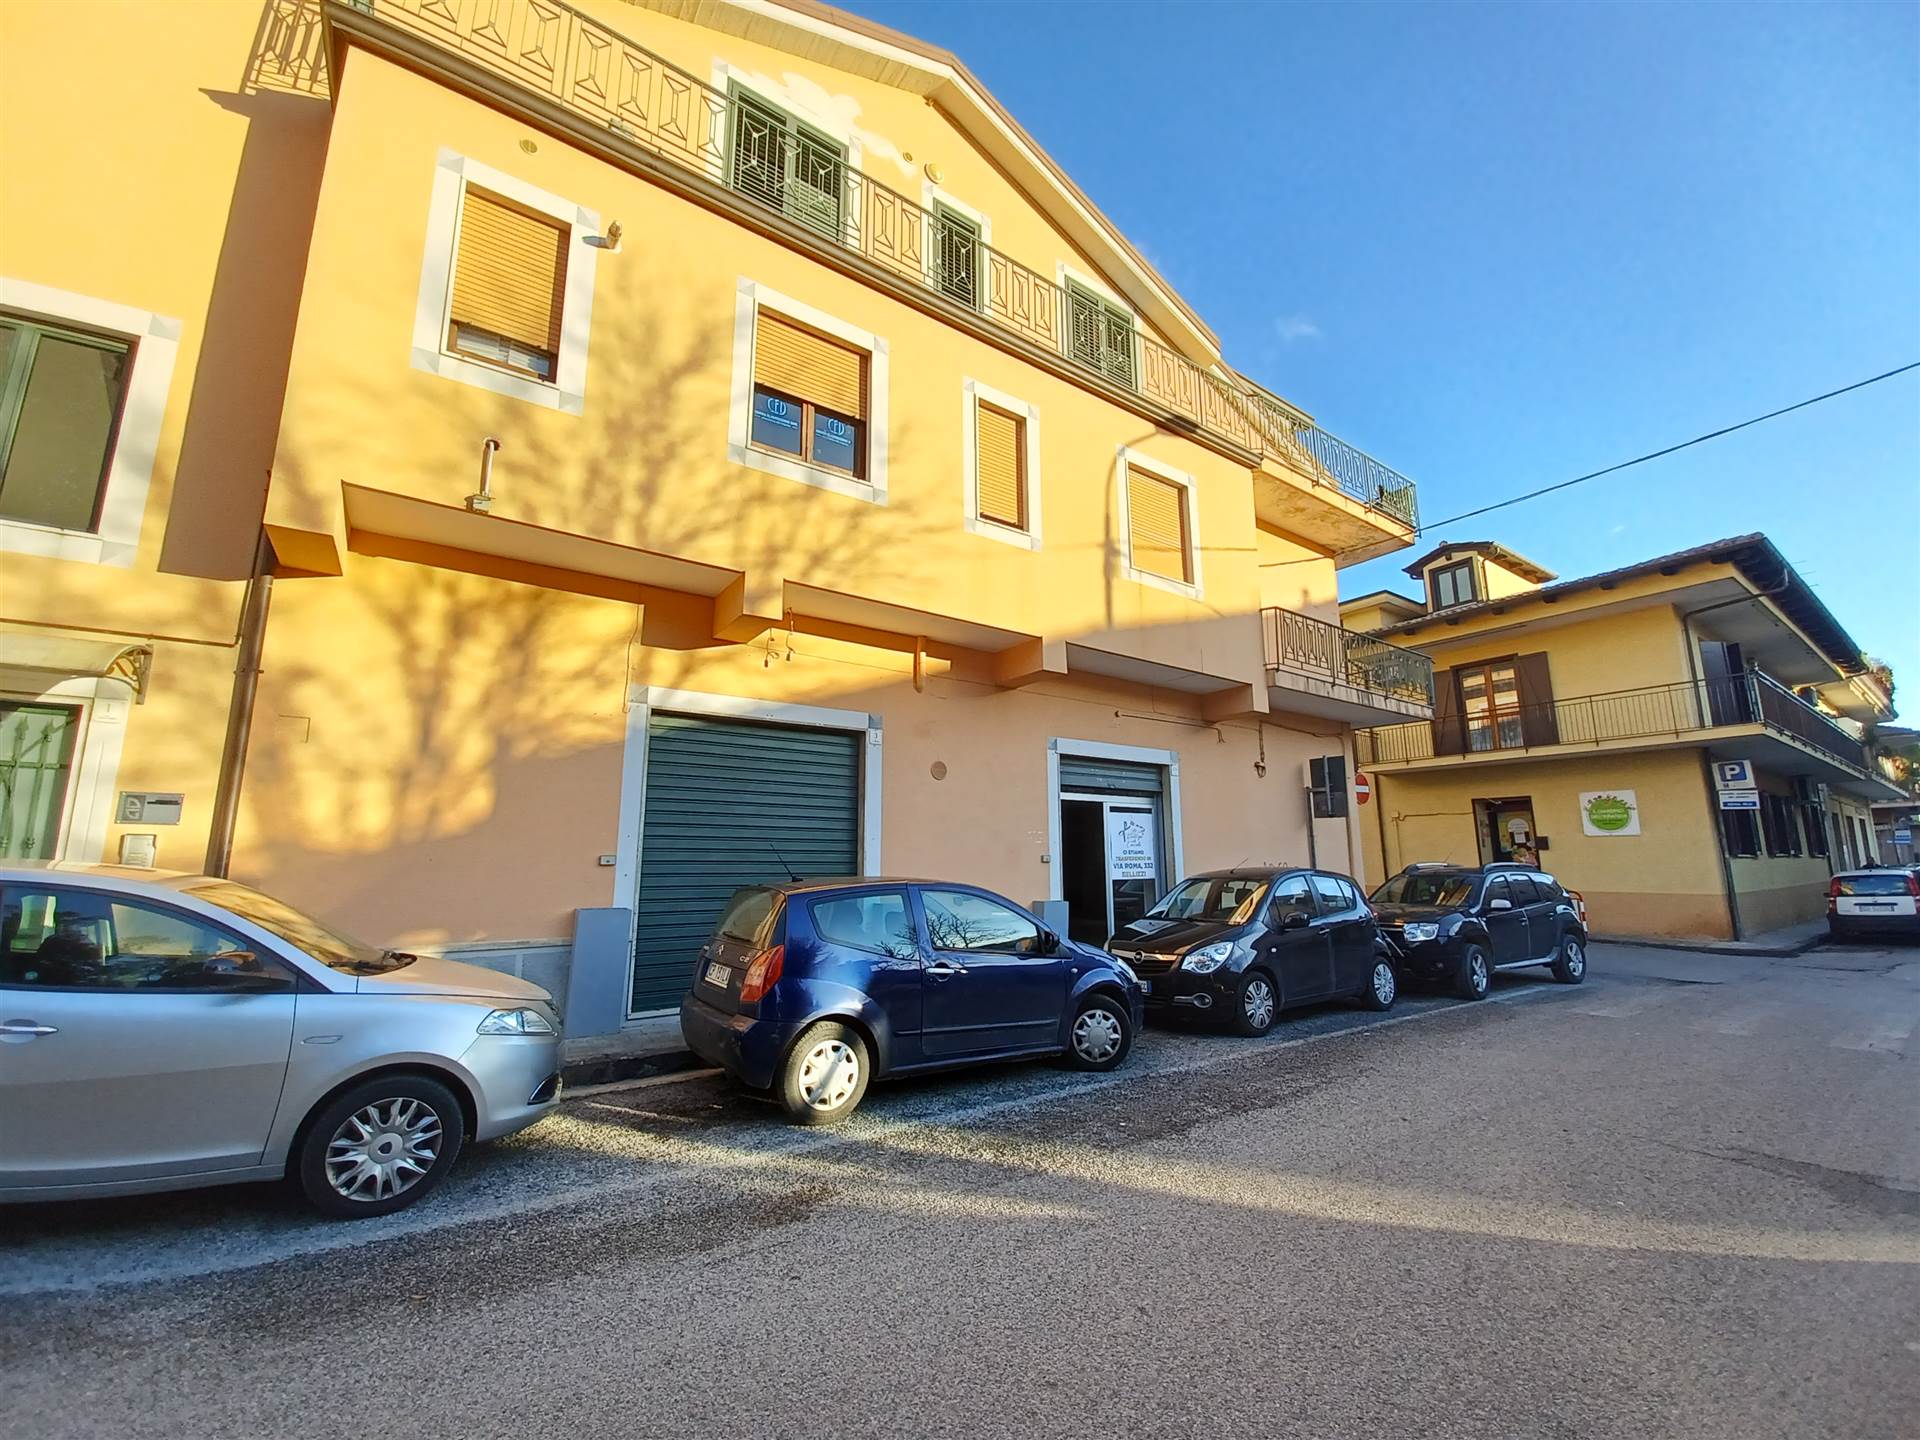 Immobile Commerciale in affitto a Bellizzi, 9999 locali, prezzo € 500 | PortaleAgenzieImmobiliari.it